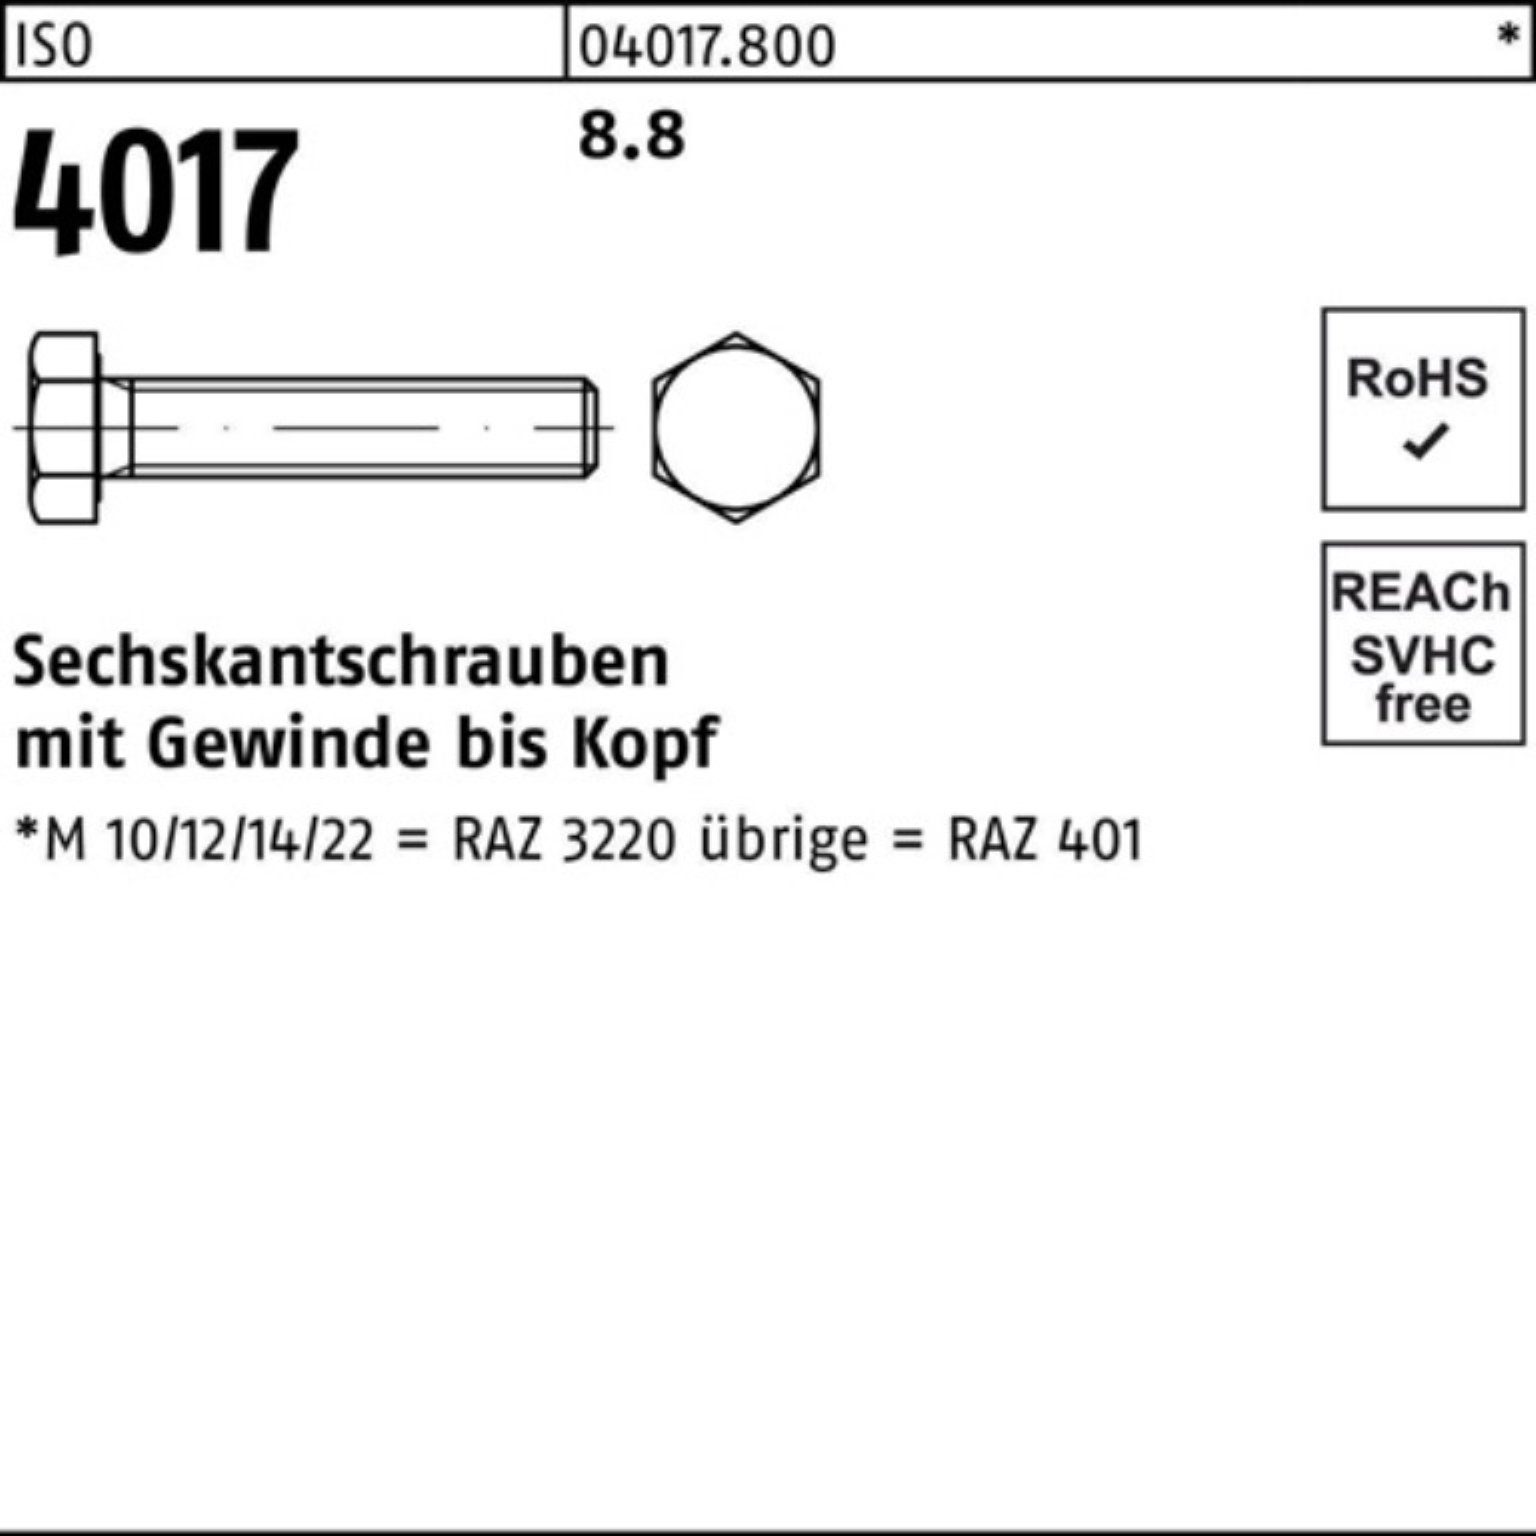 Bufab Sechskantschraube 100er Pack M12x 4017 100 40 ISO ISO Sechskantschraube 8.8 VG 28 Stück